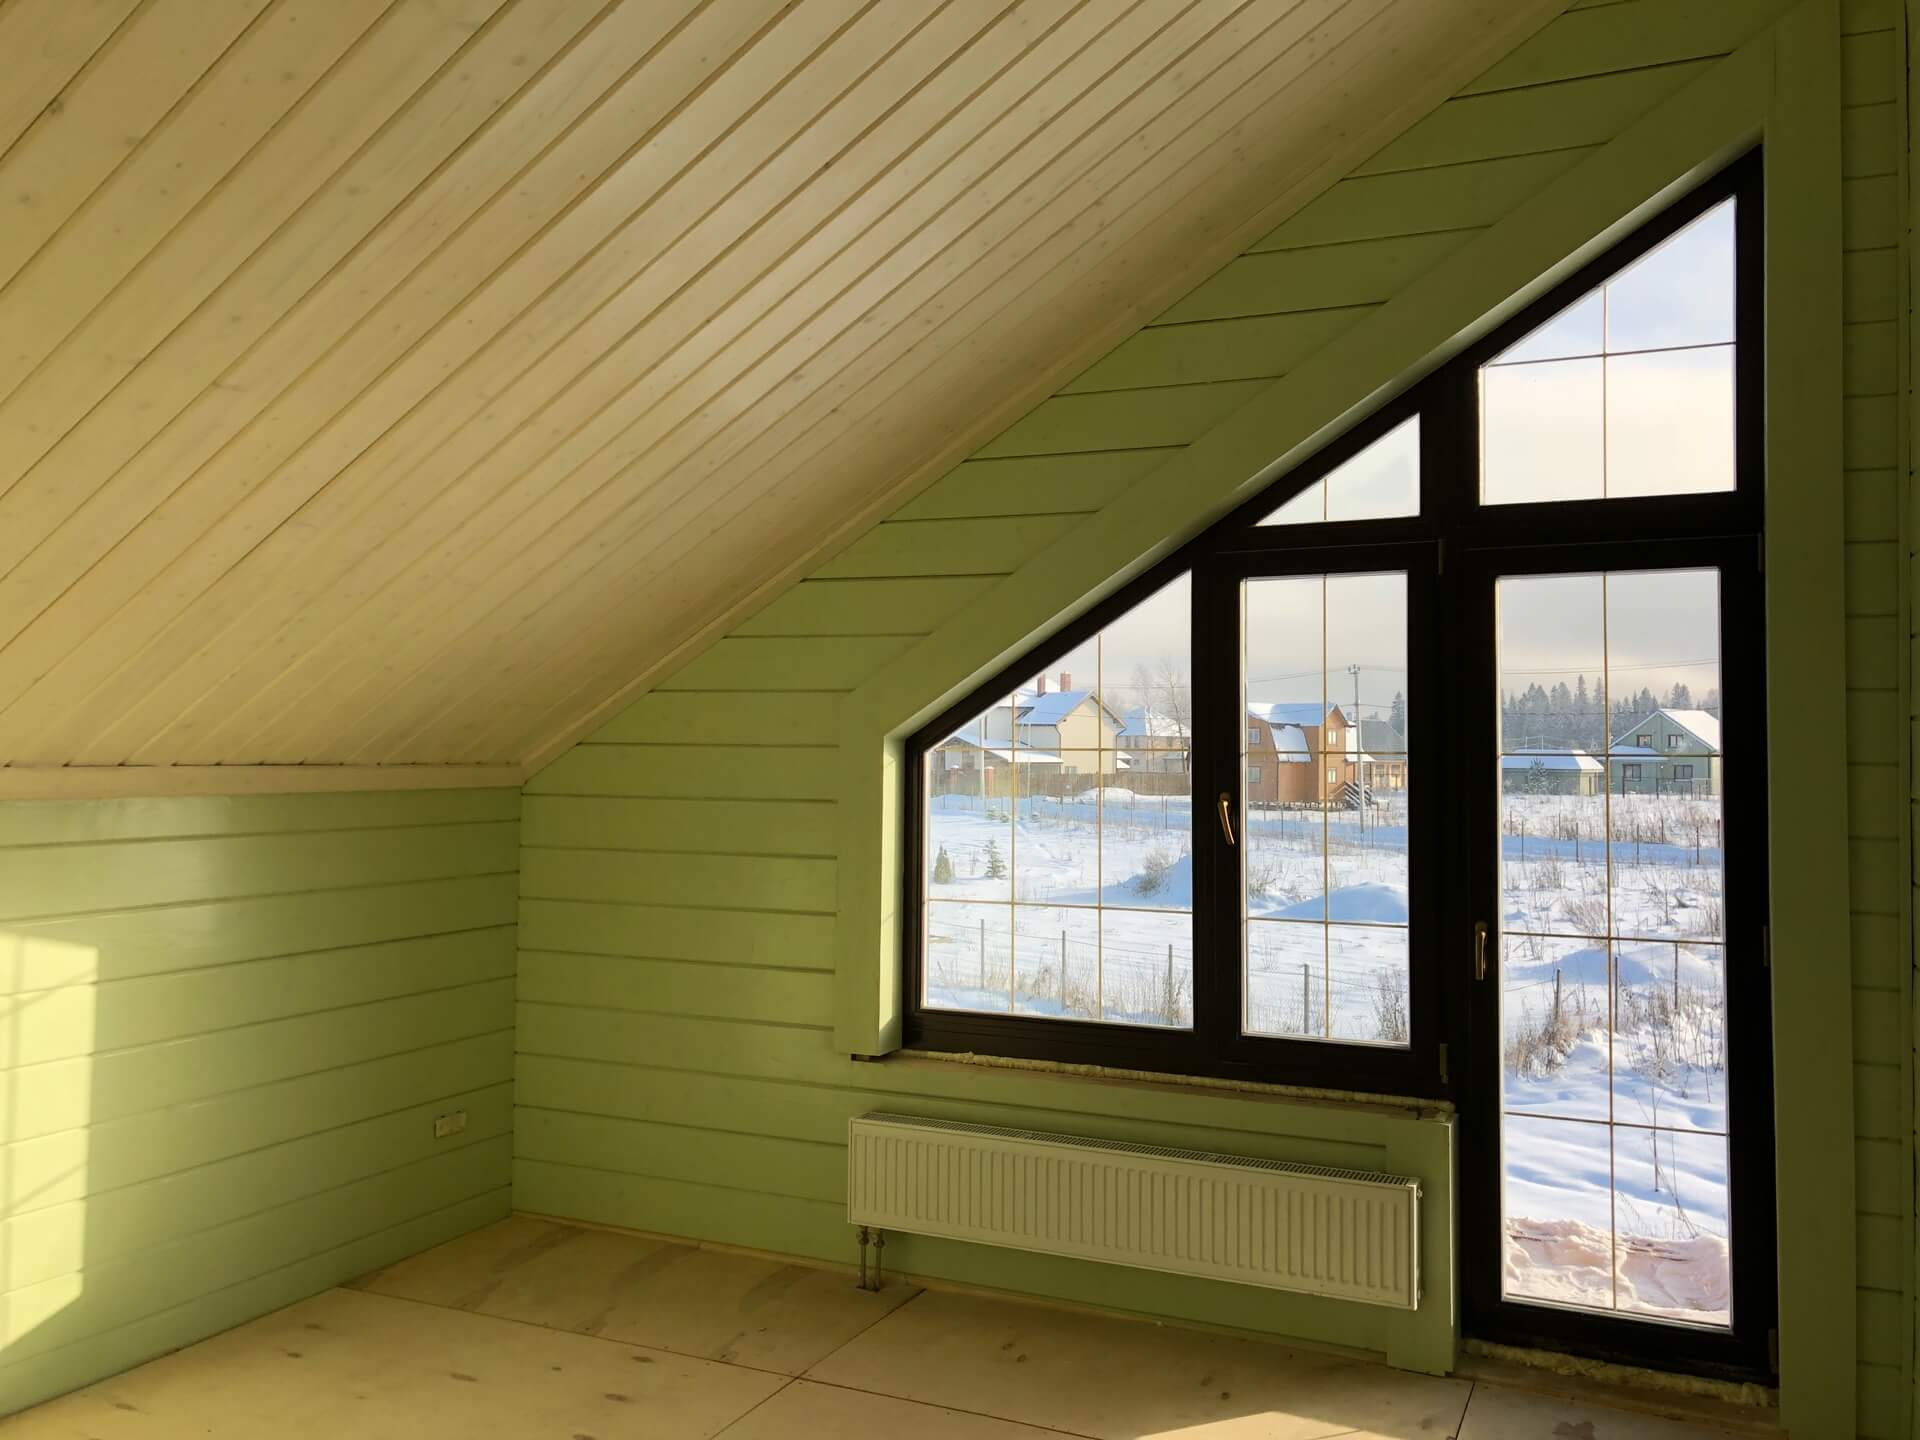 Фото работы по остеклению дерево алюминиевыми окнами загородного дома зимой